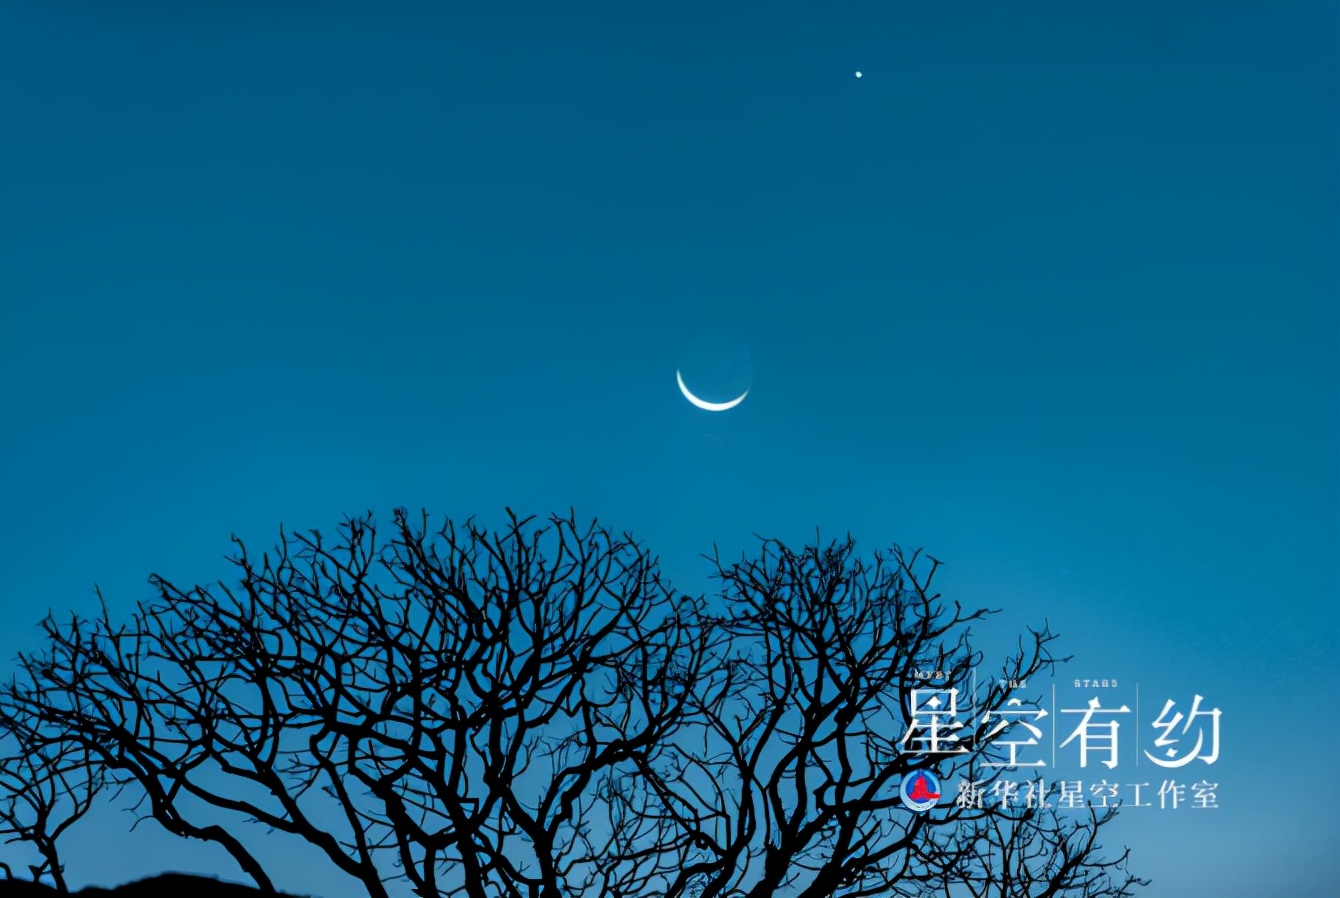 湖北省天文爱好者倪文凯2020年12月13日在云南丽江拍摄的金星合月